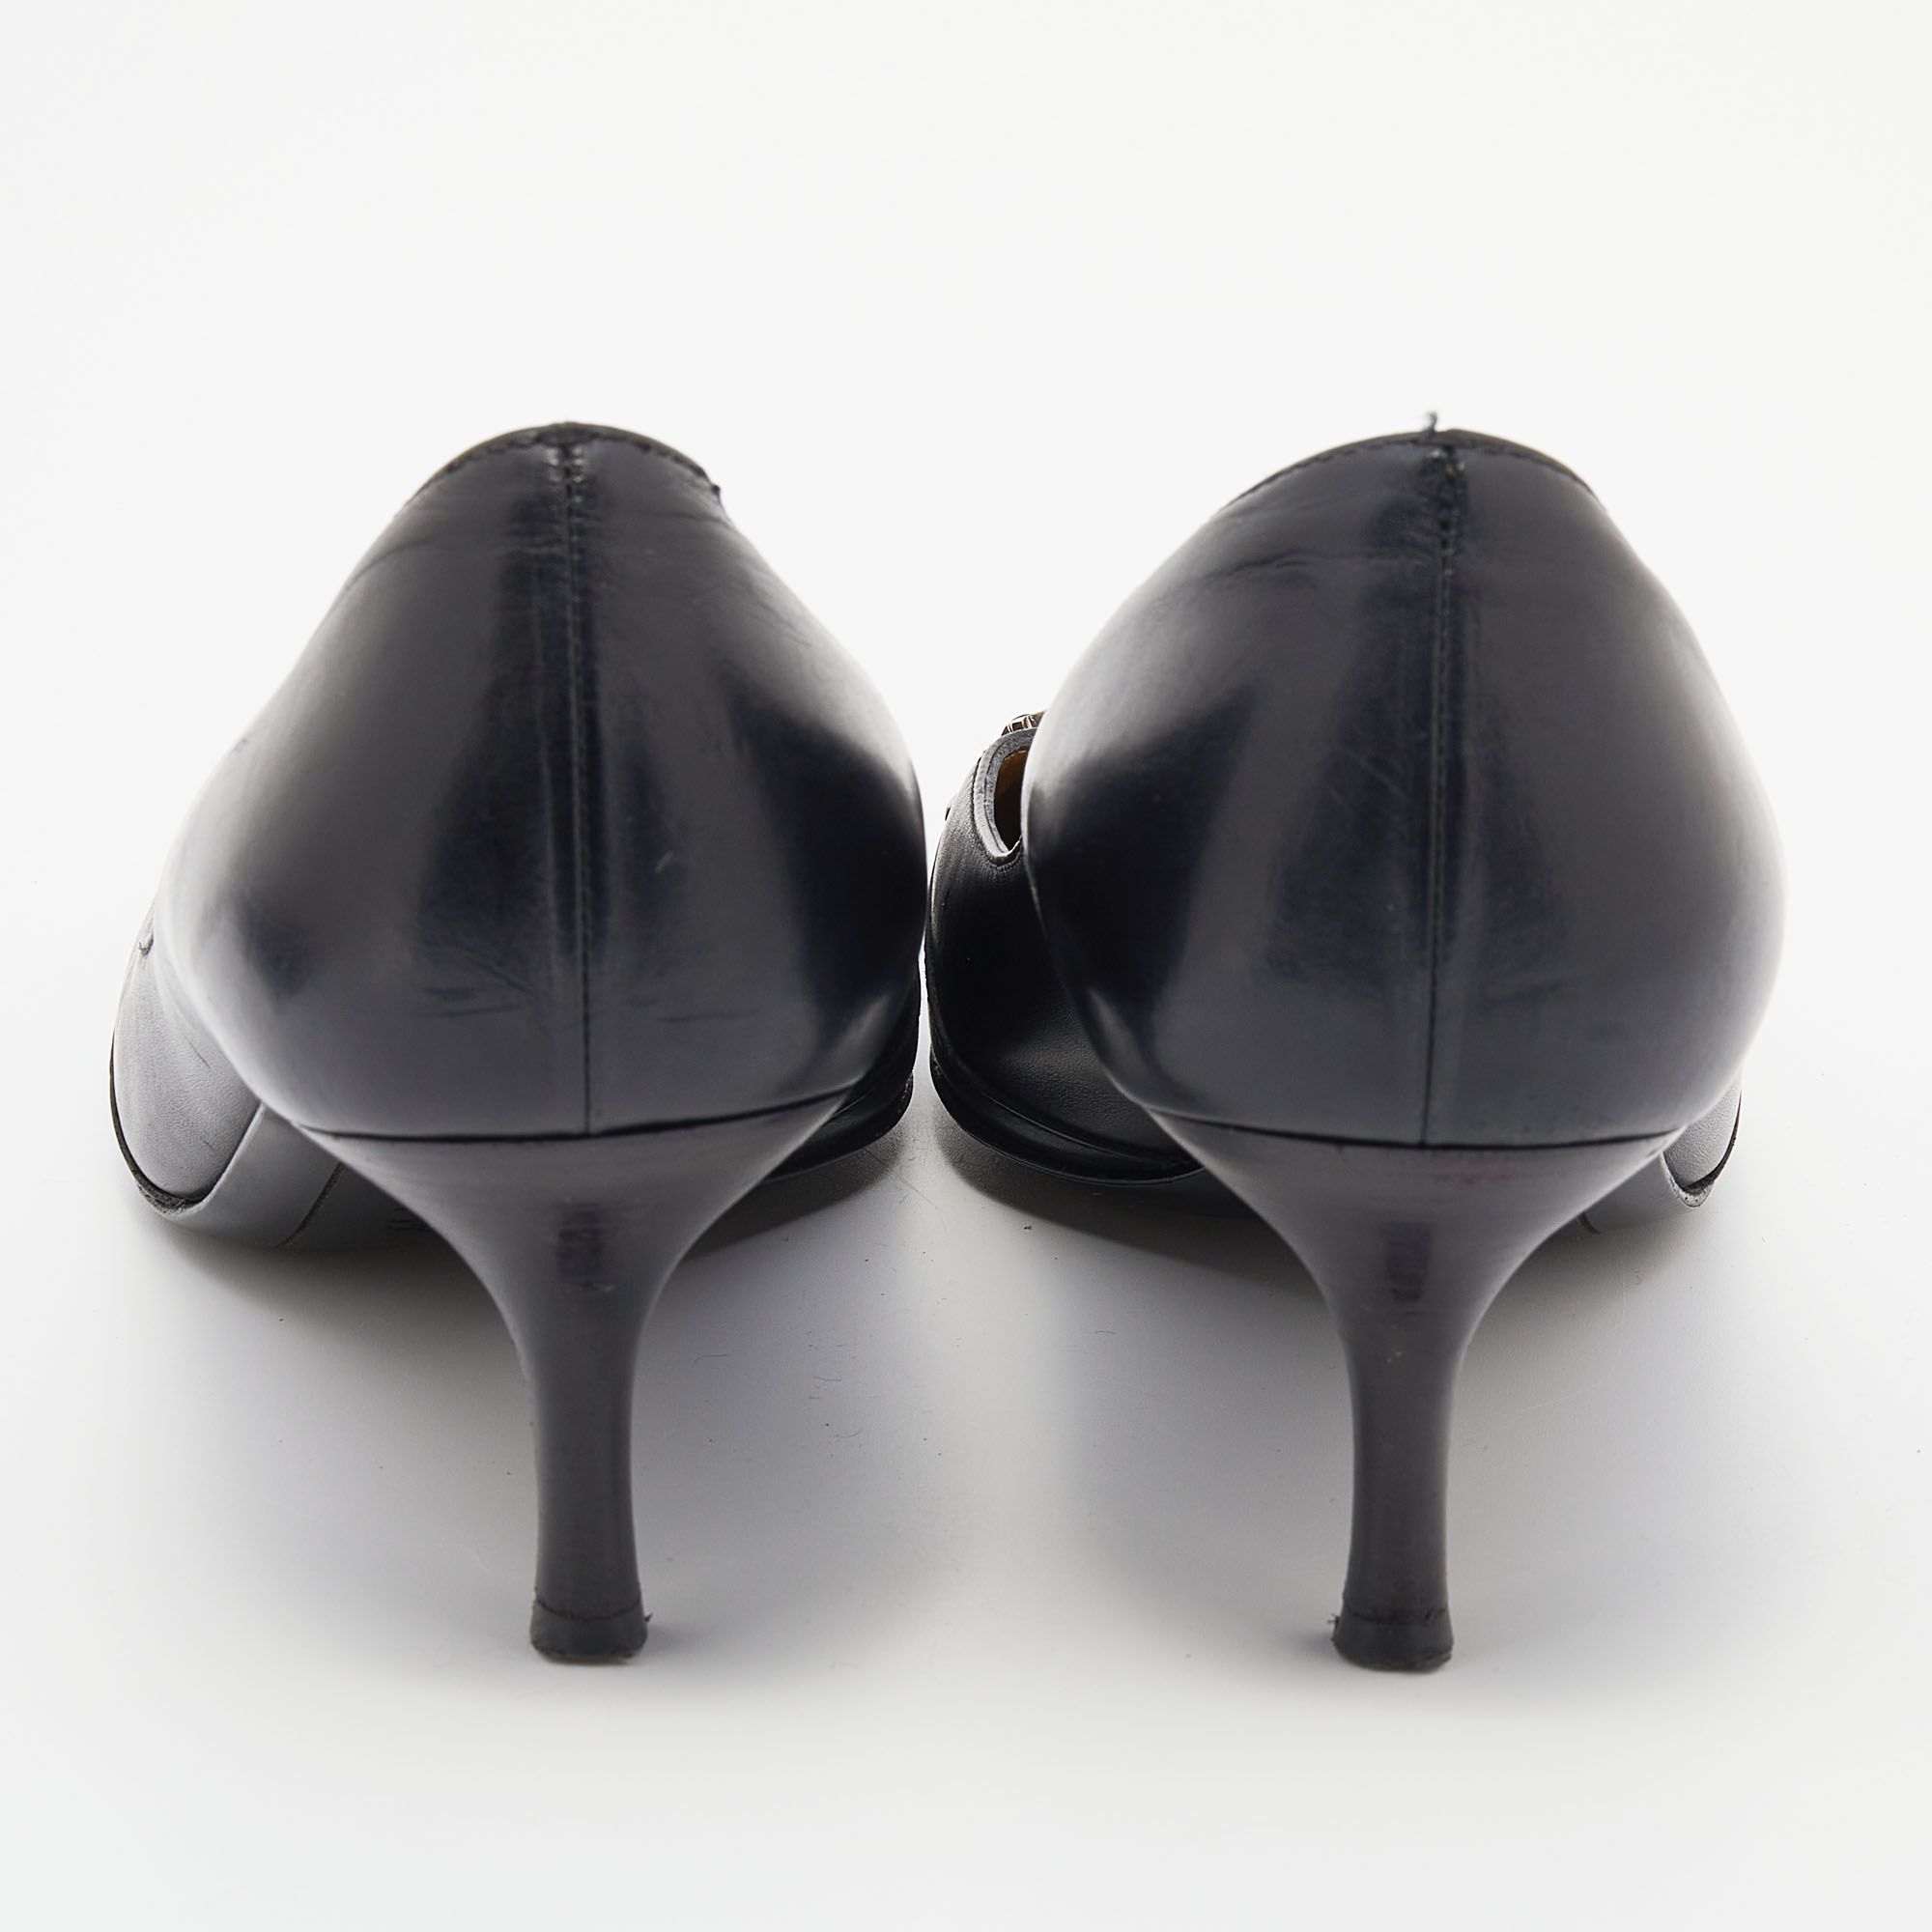 Salvatore Ferragamo Black Leather Square Toe Pumps Size 40